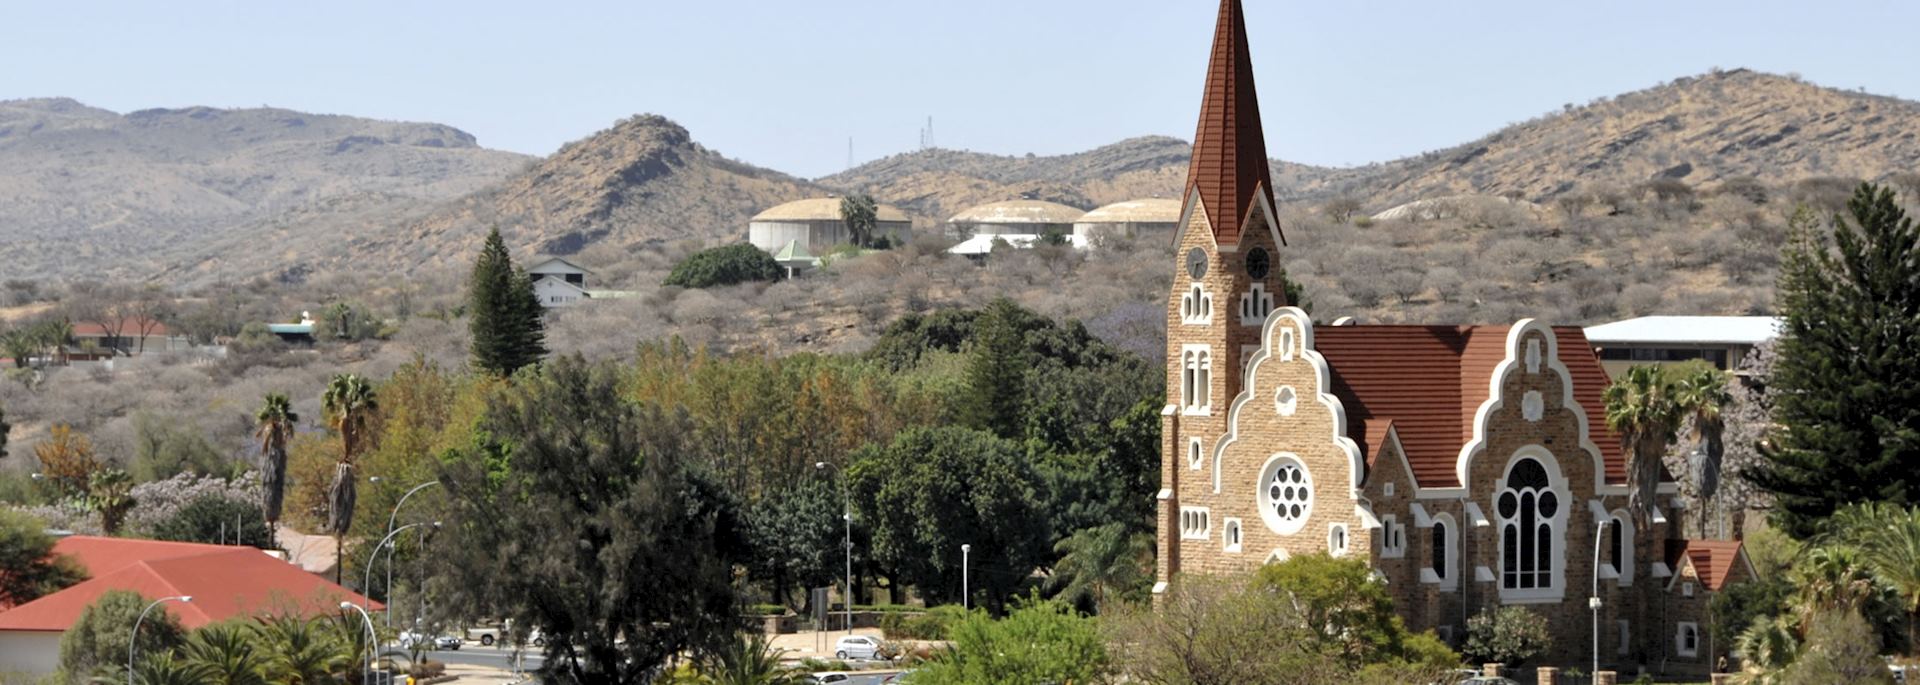 Church in Windhoek